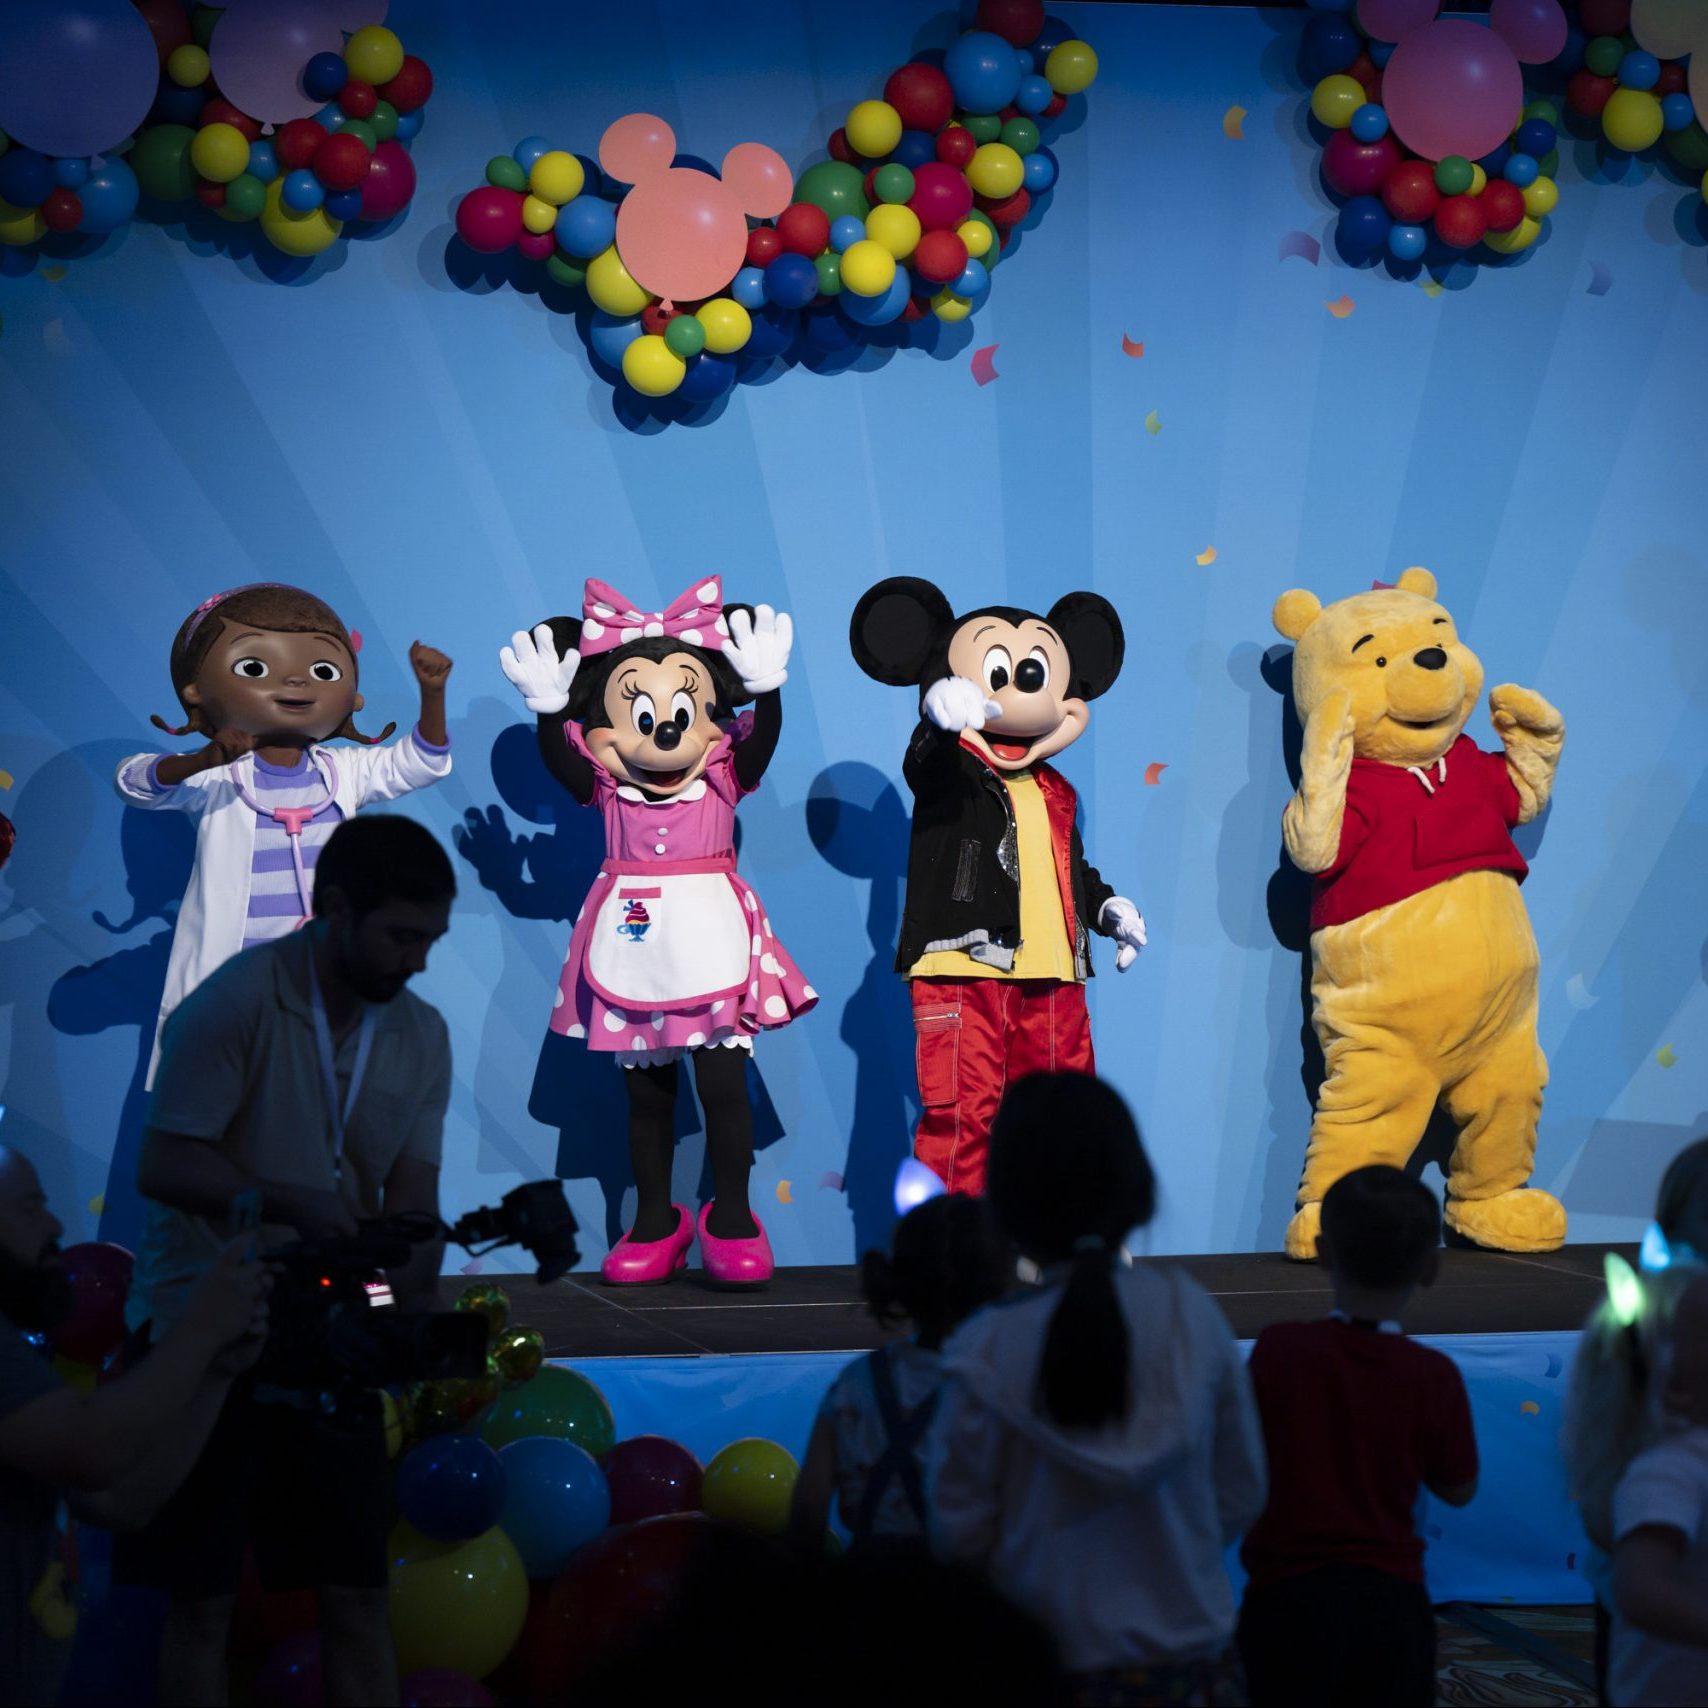 Disney Junior Celebrates New and Returning Shows at Disney Junior